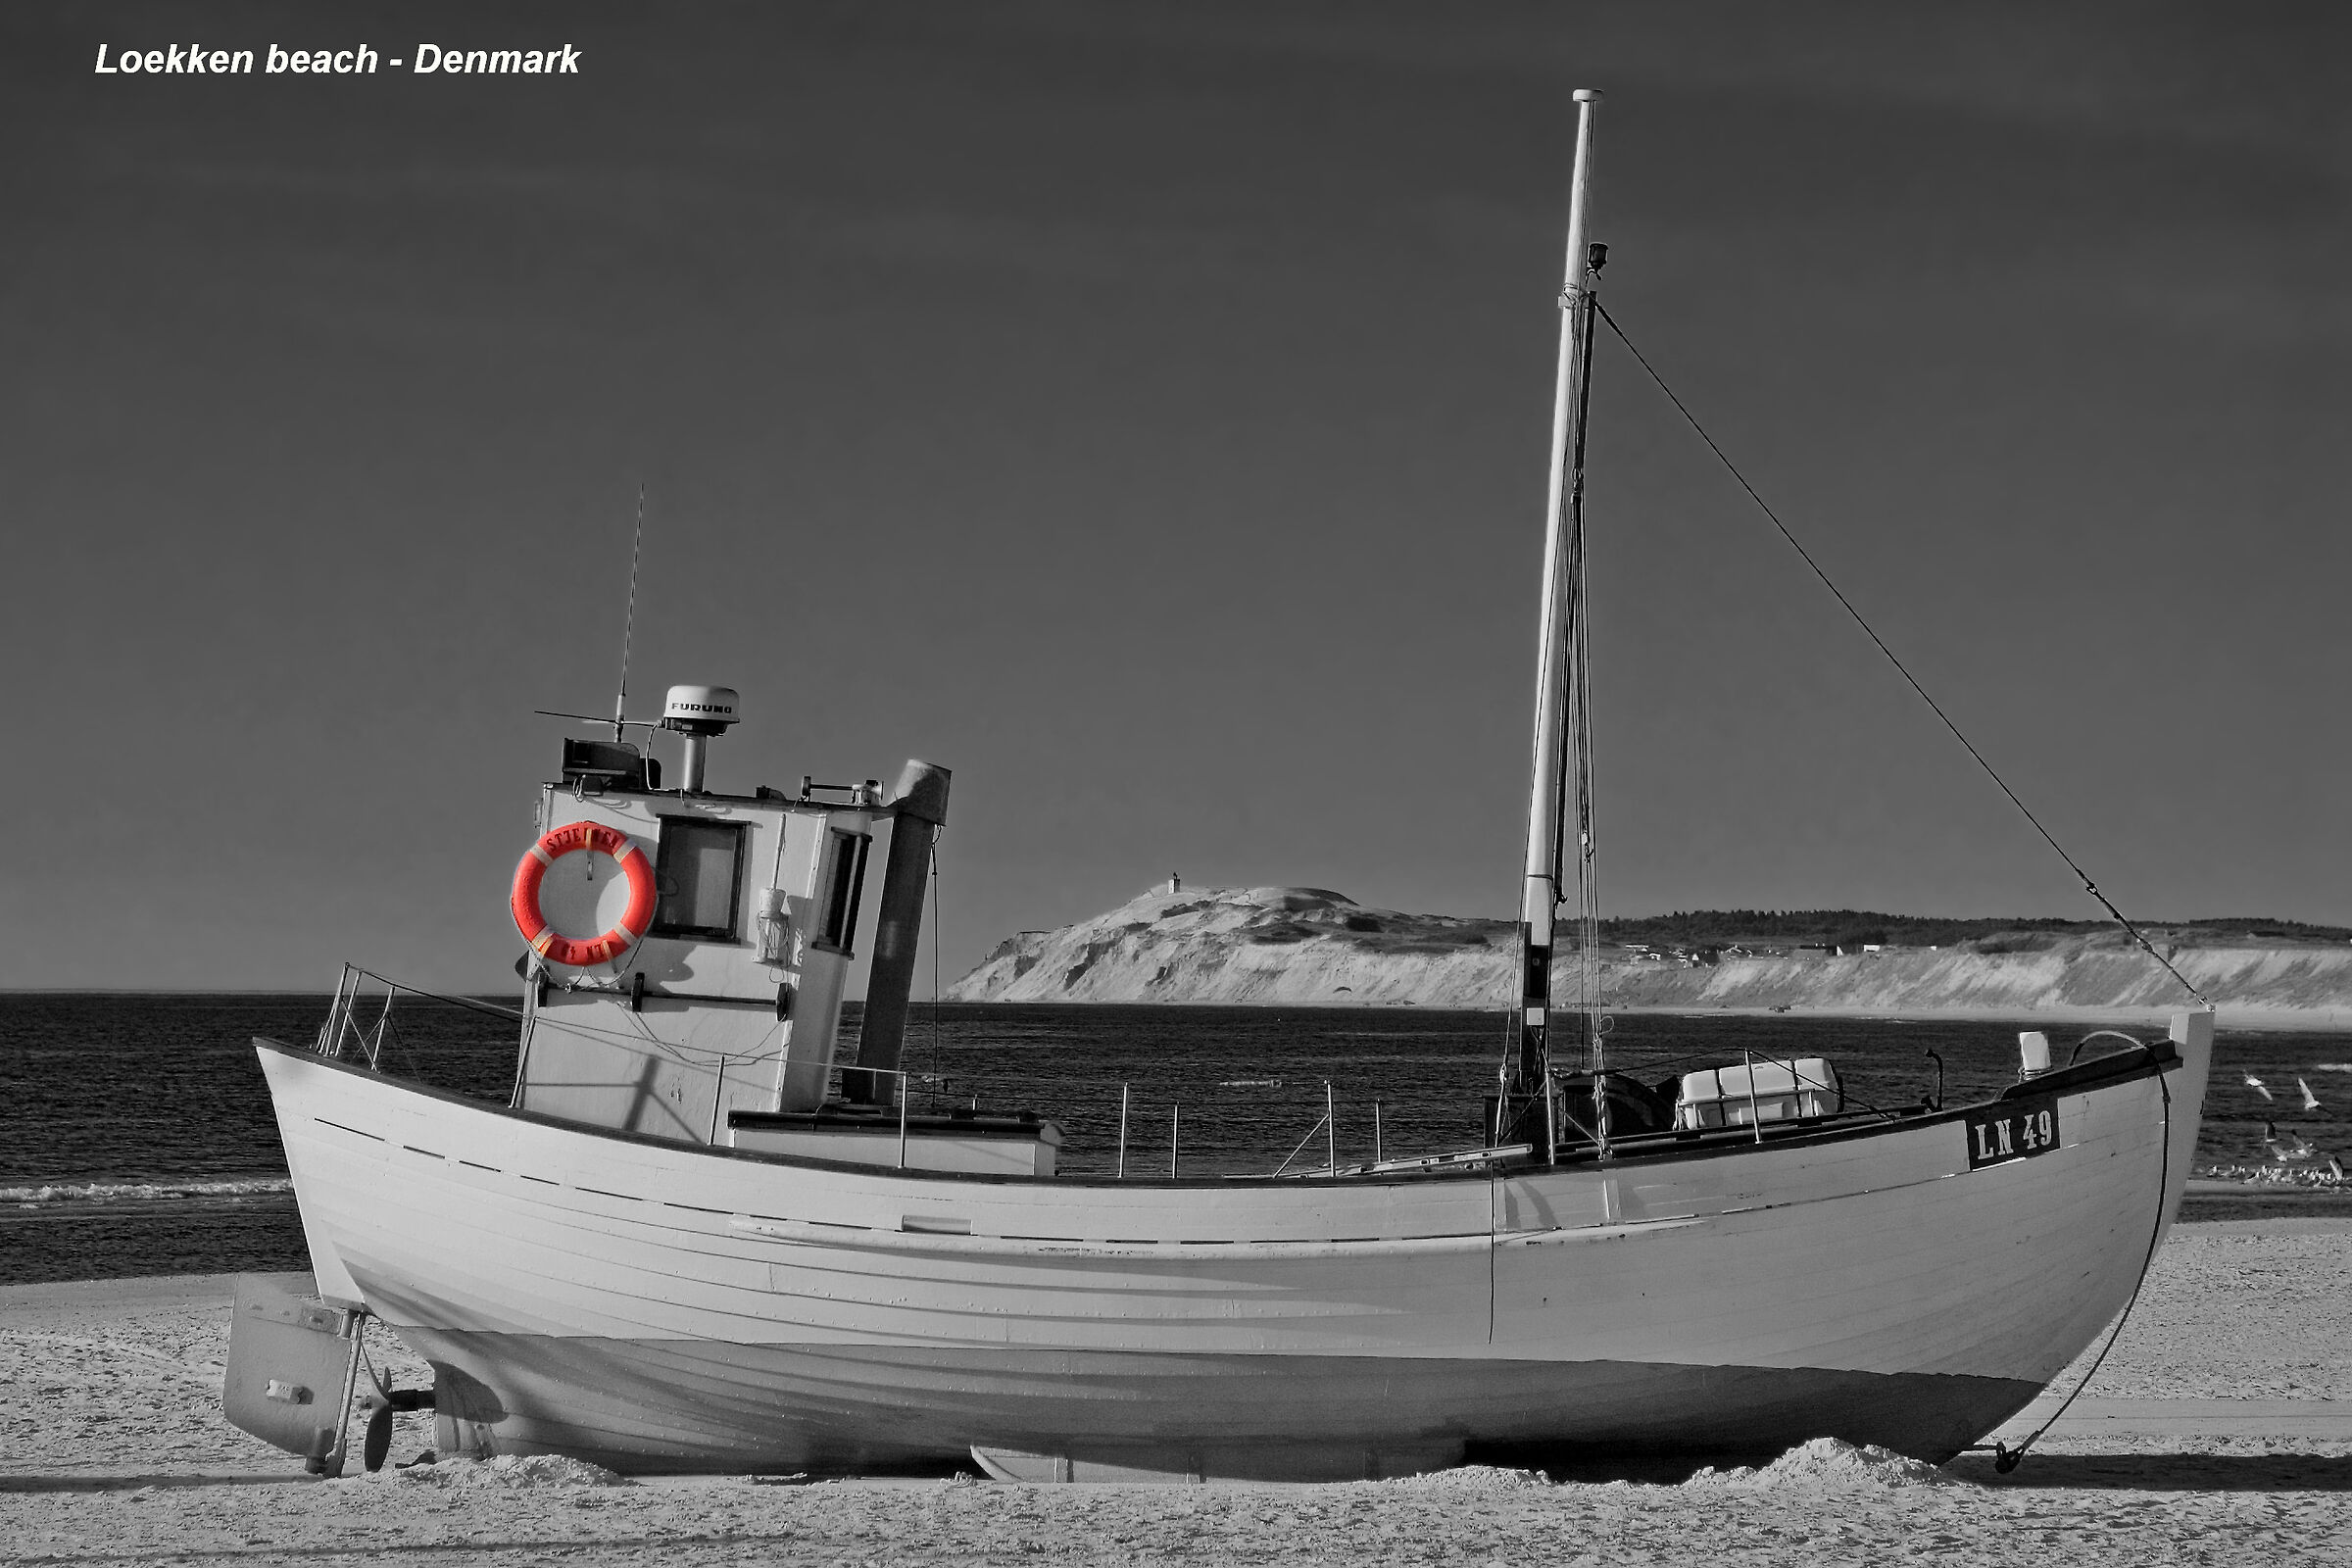 Fishing boat on the beach at Loekken - Denmark...